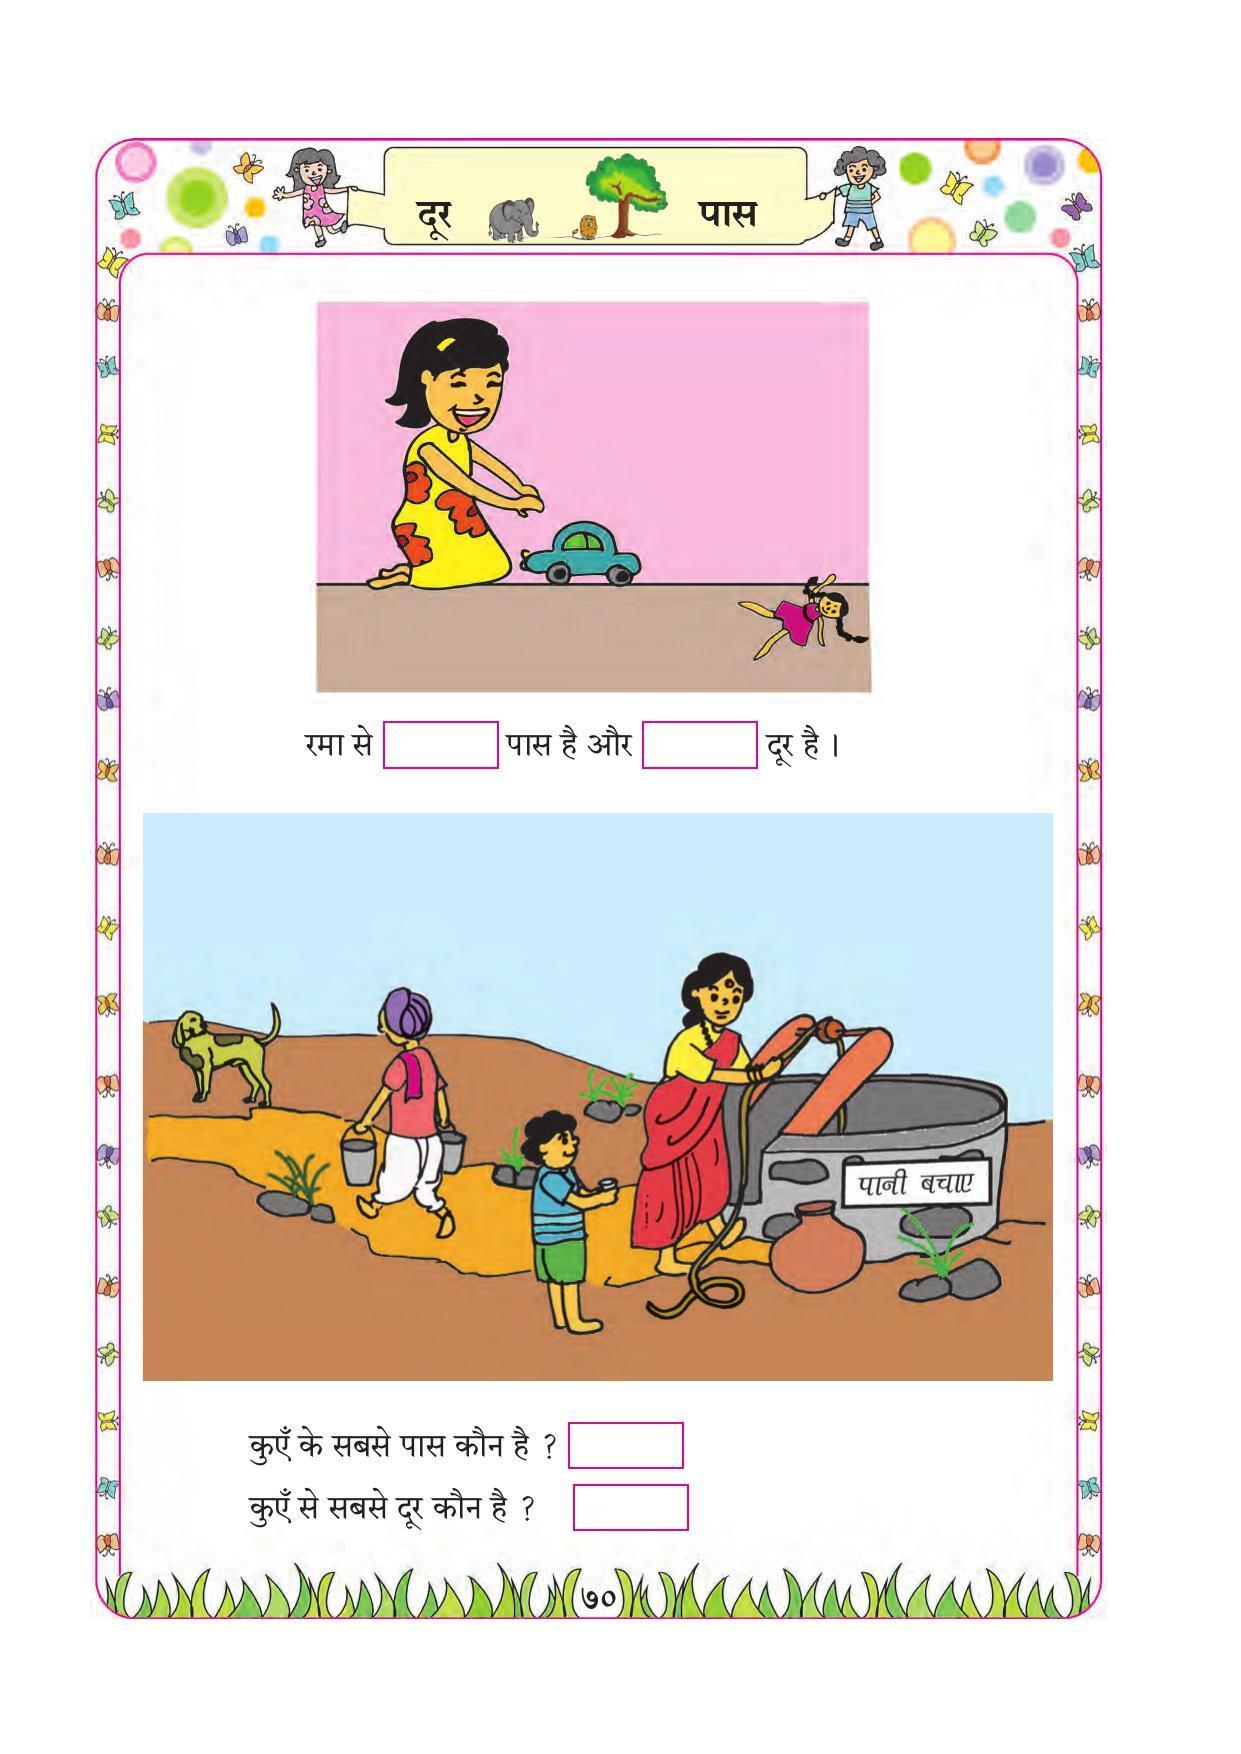 Maharashtra Board Class 1 Maths (Hindi Medium) Textbook - Page 80